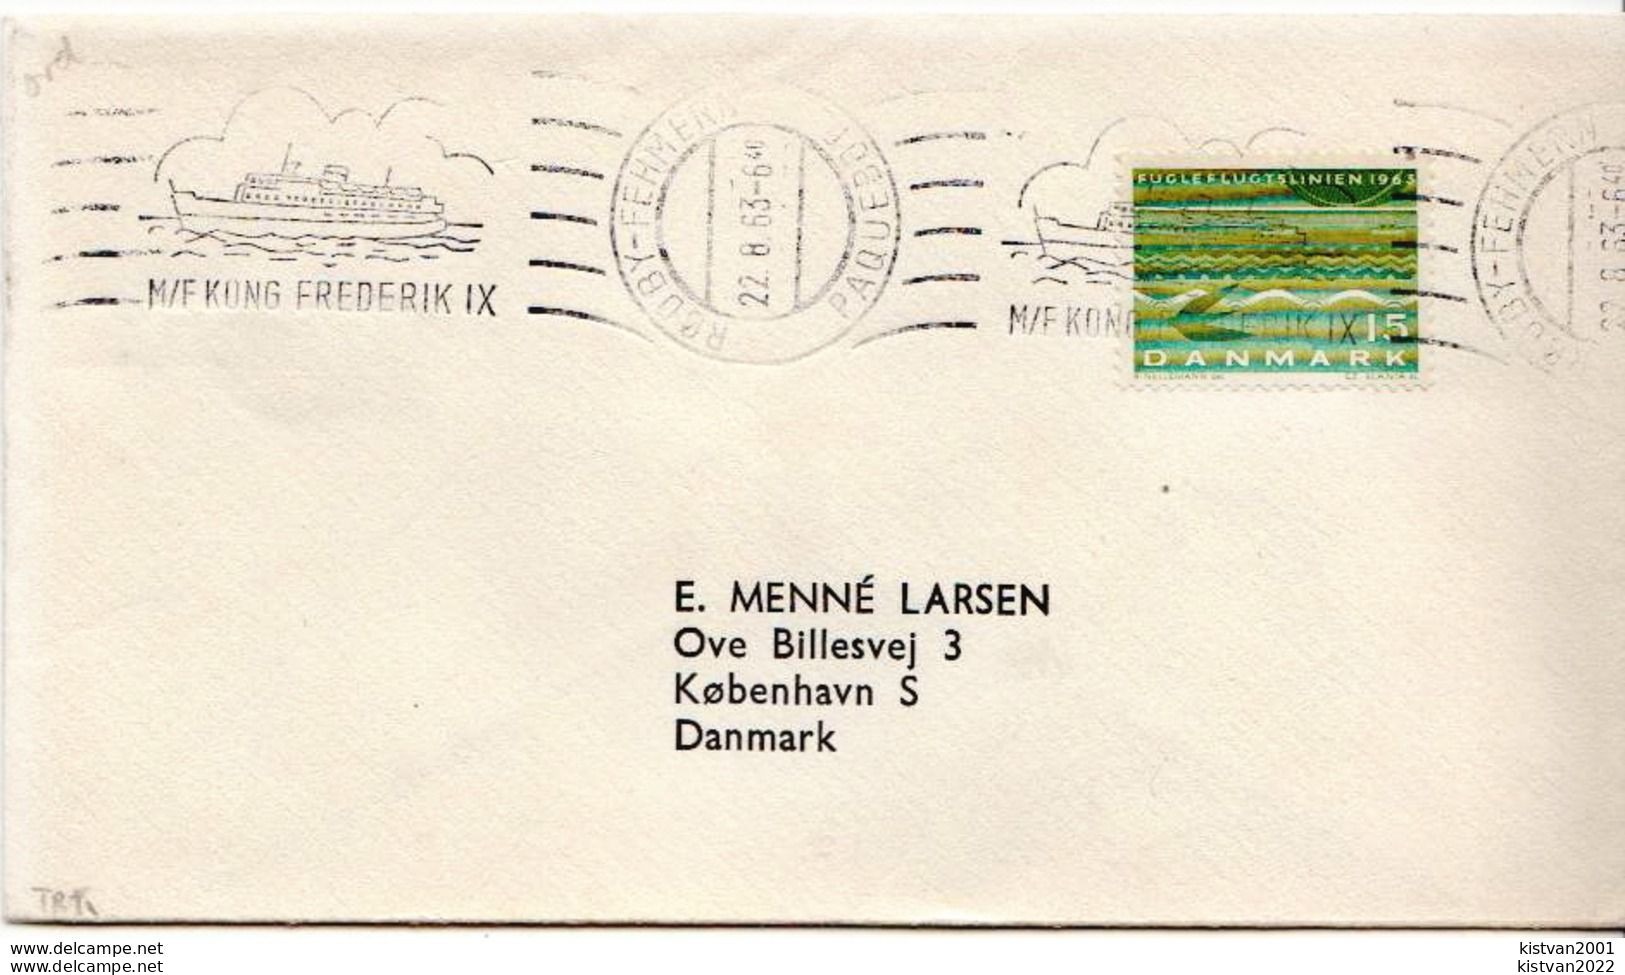 Postal History Cover: Denmark Cover With M/F KONG FREDERIK IX Ship Cancel - Cartas & Documentos